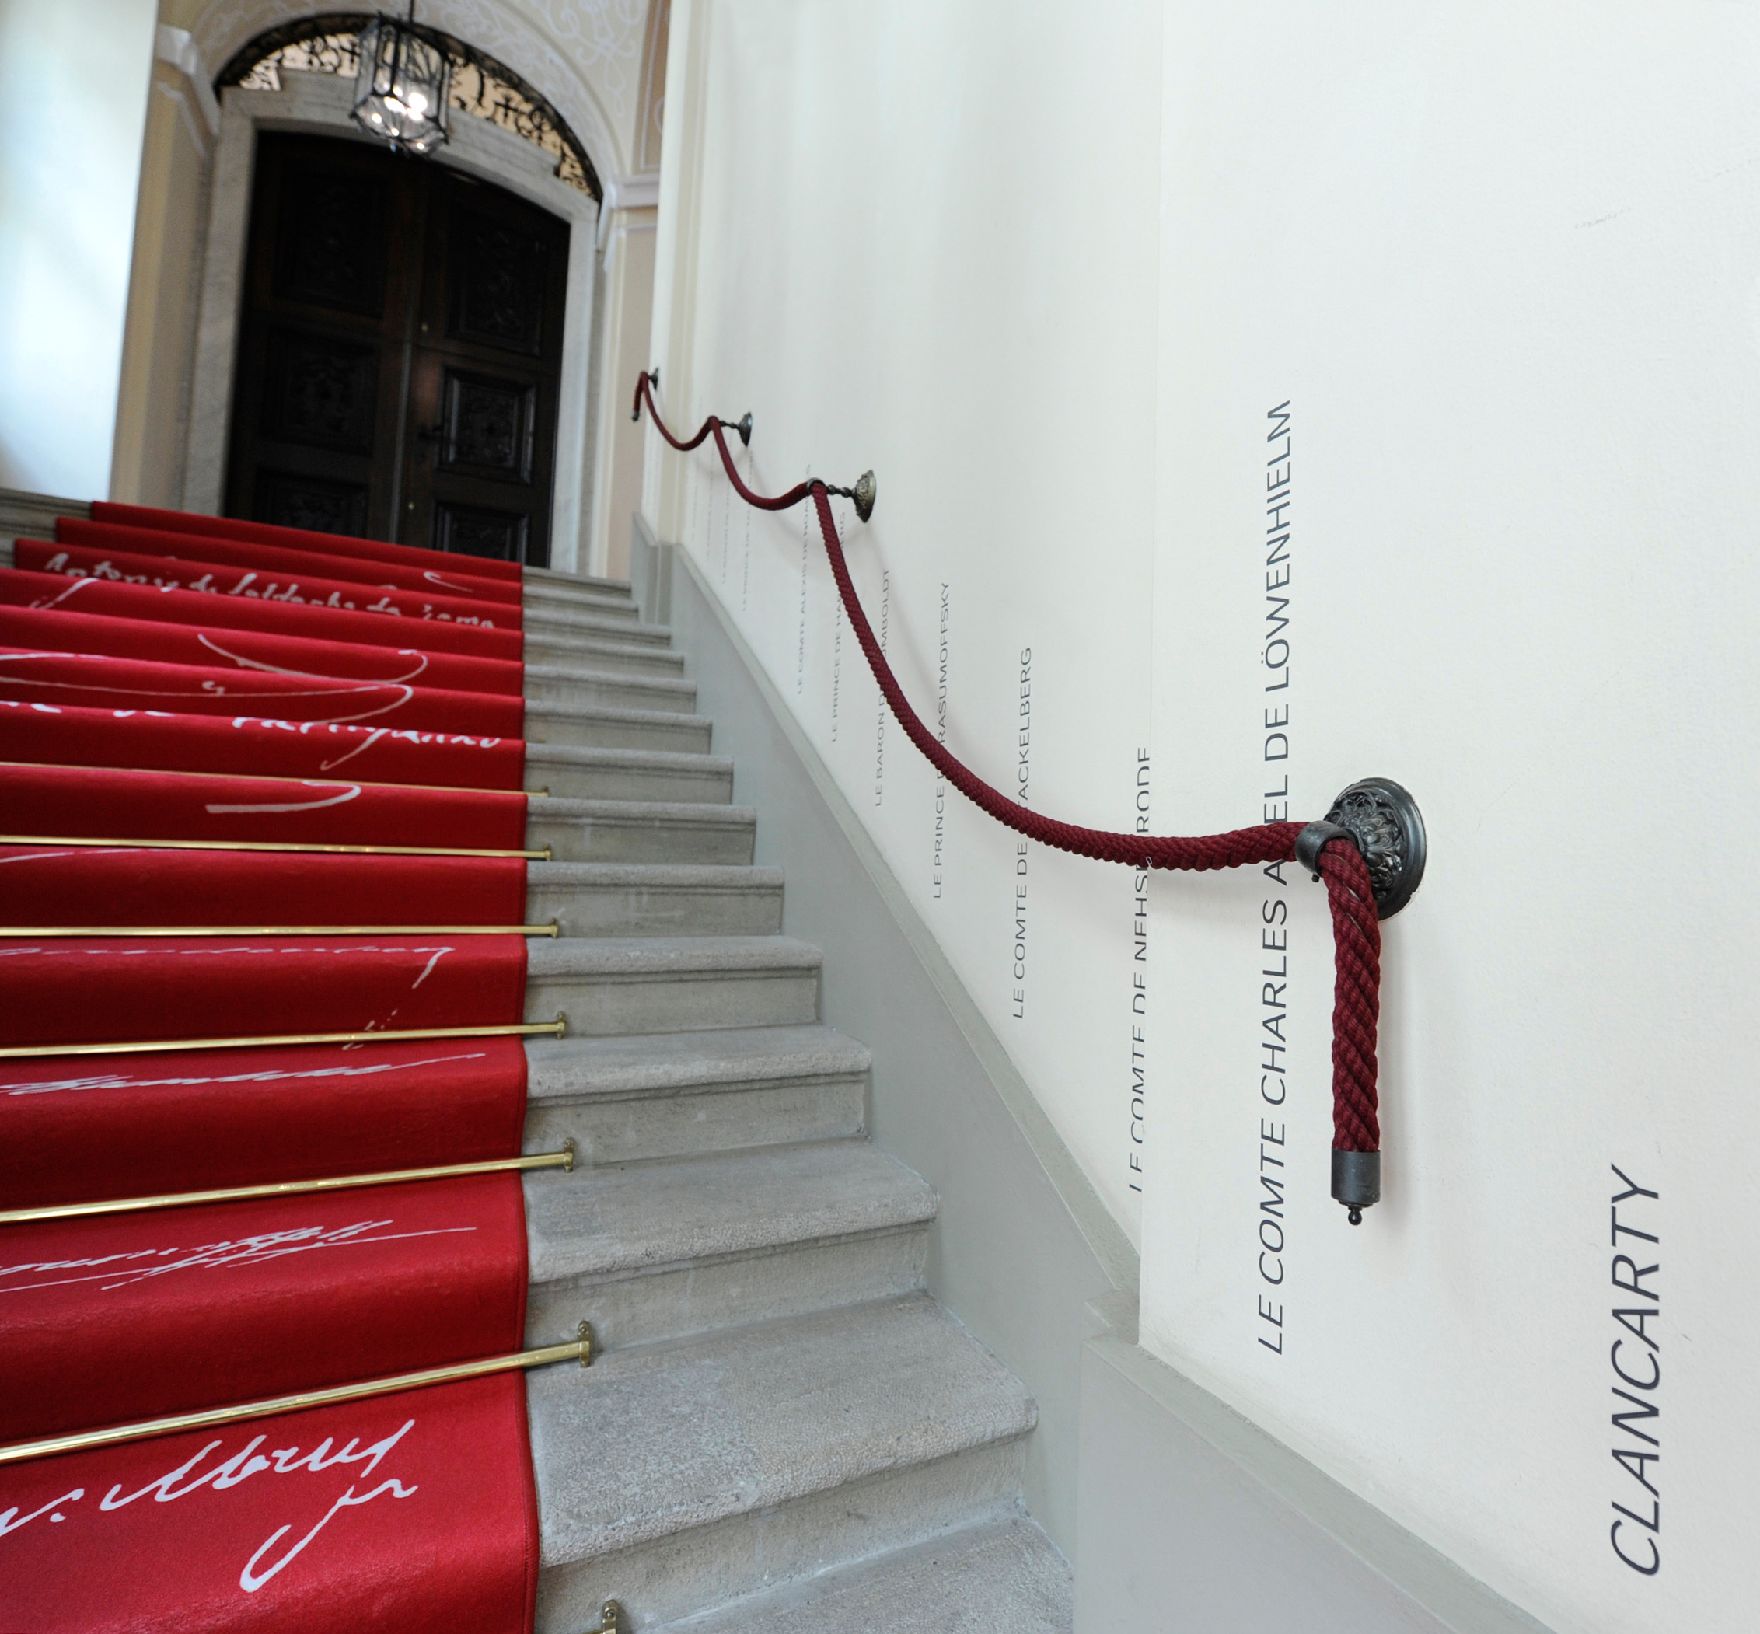 Am 8. Juni 2015 fand im Bundeskanzleramt das Pre-Opening der Ausstellung "Idee Europa - 200 Jahre Wiener Kongress" statt. Impressionen der Ausstellung.